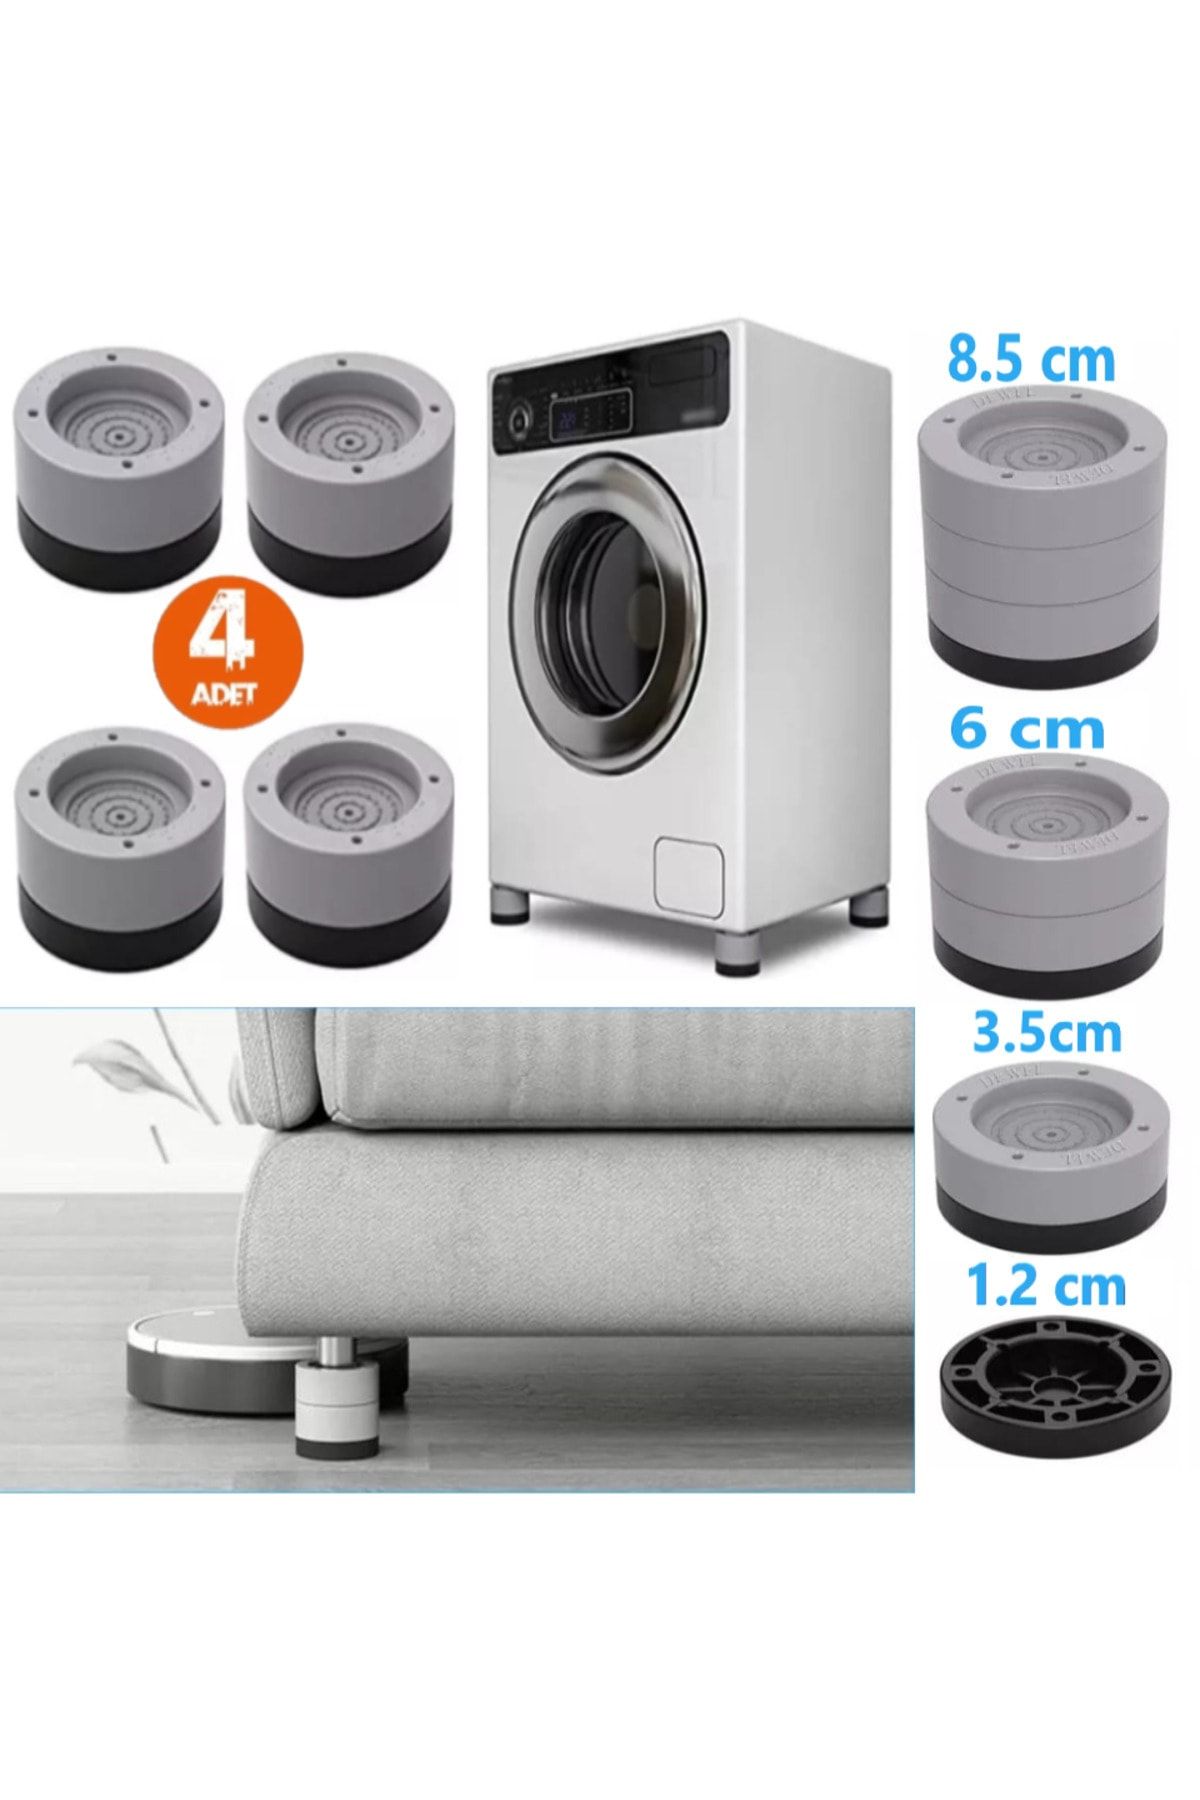 TİNEKE Beyaz Eşya Ayağı Çamaşır Makinesi Mobilya Titreşim Önleyici Kaydırmaz Ve 8.5 Cm Yükseltici 4 Lü Set